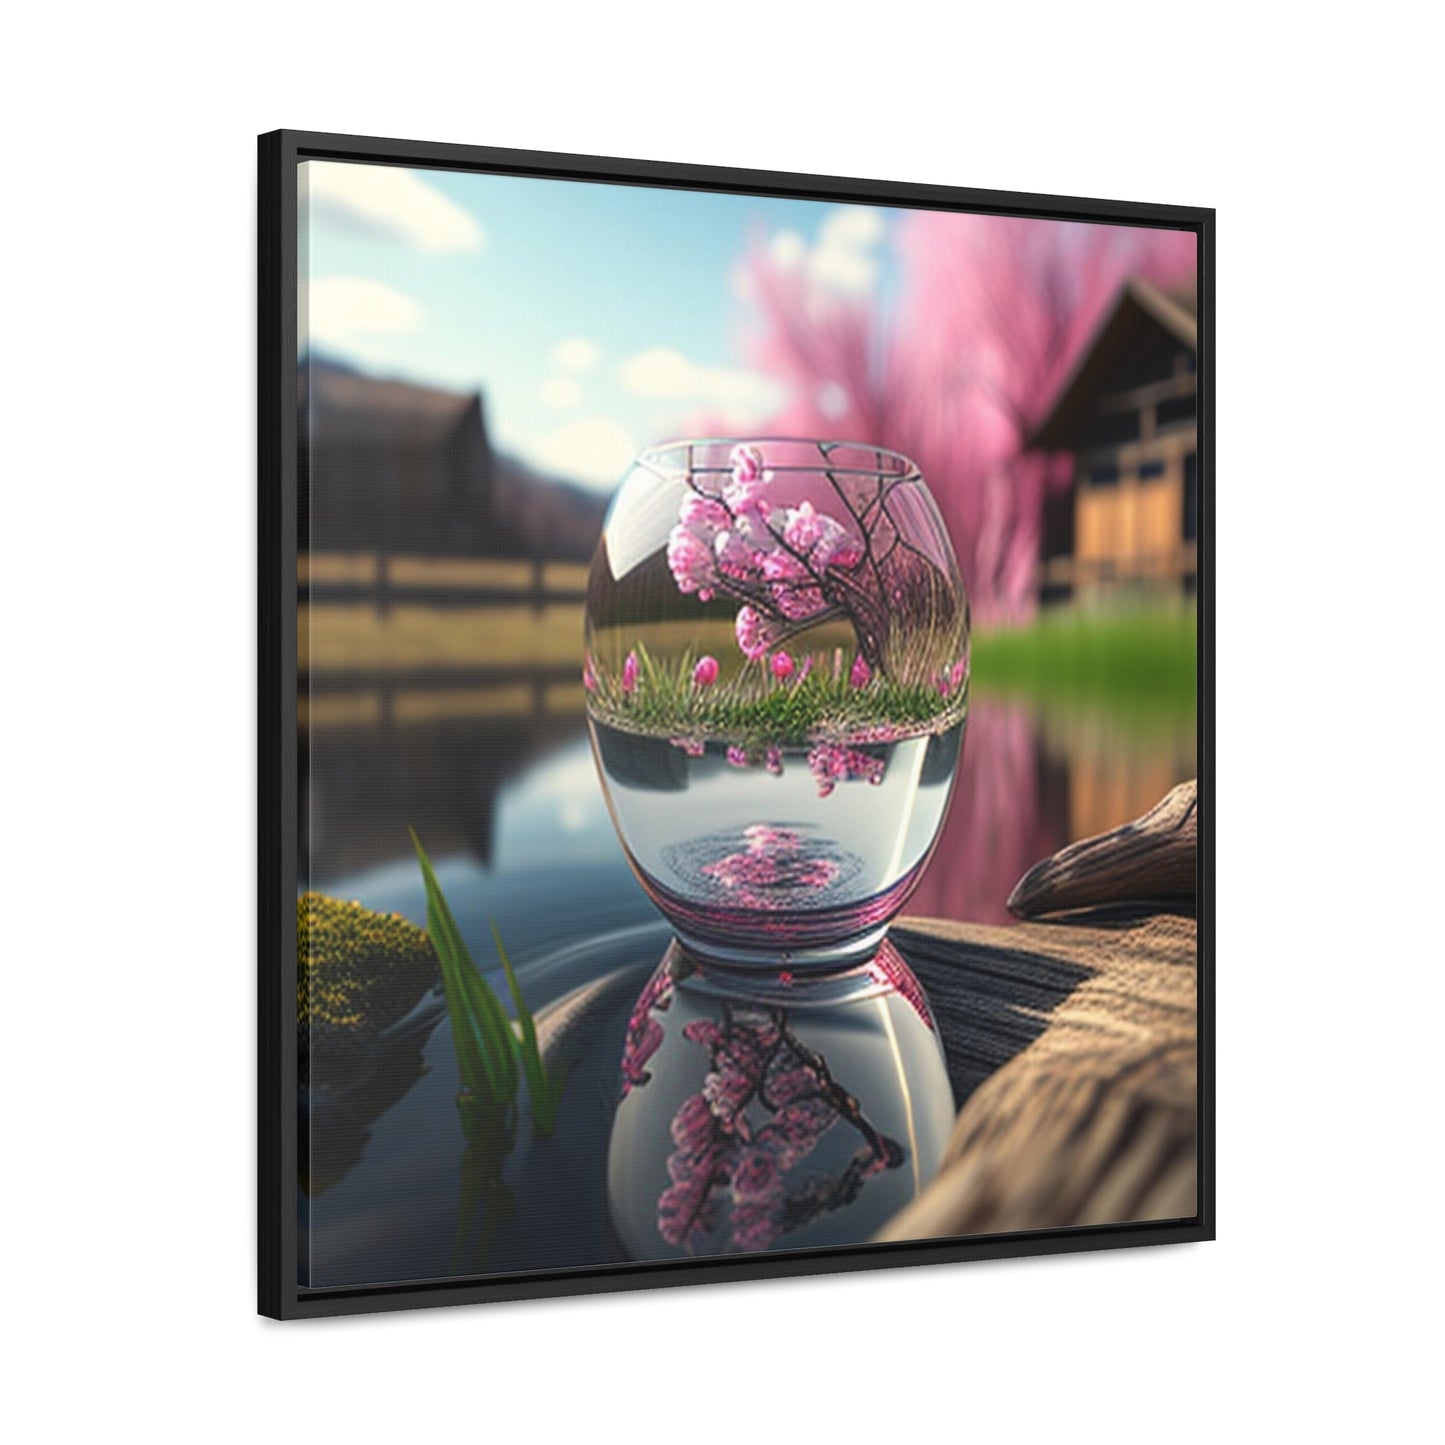 Gallery Canvas Wraps, Square Frame Cherry Blossom 2